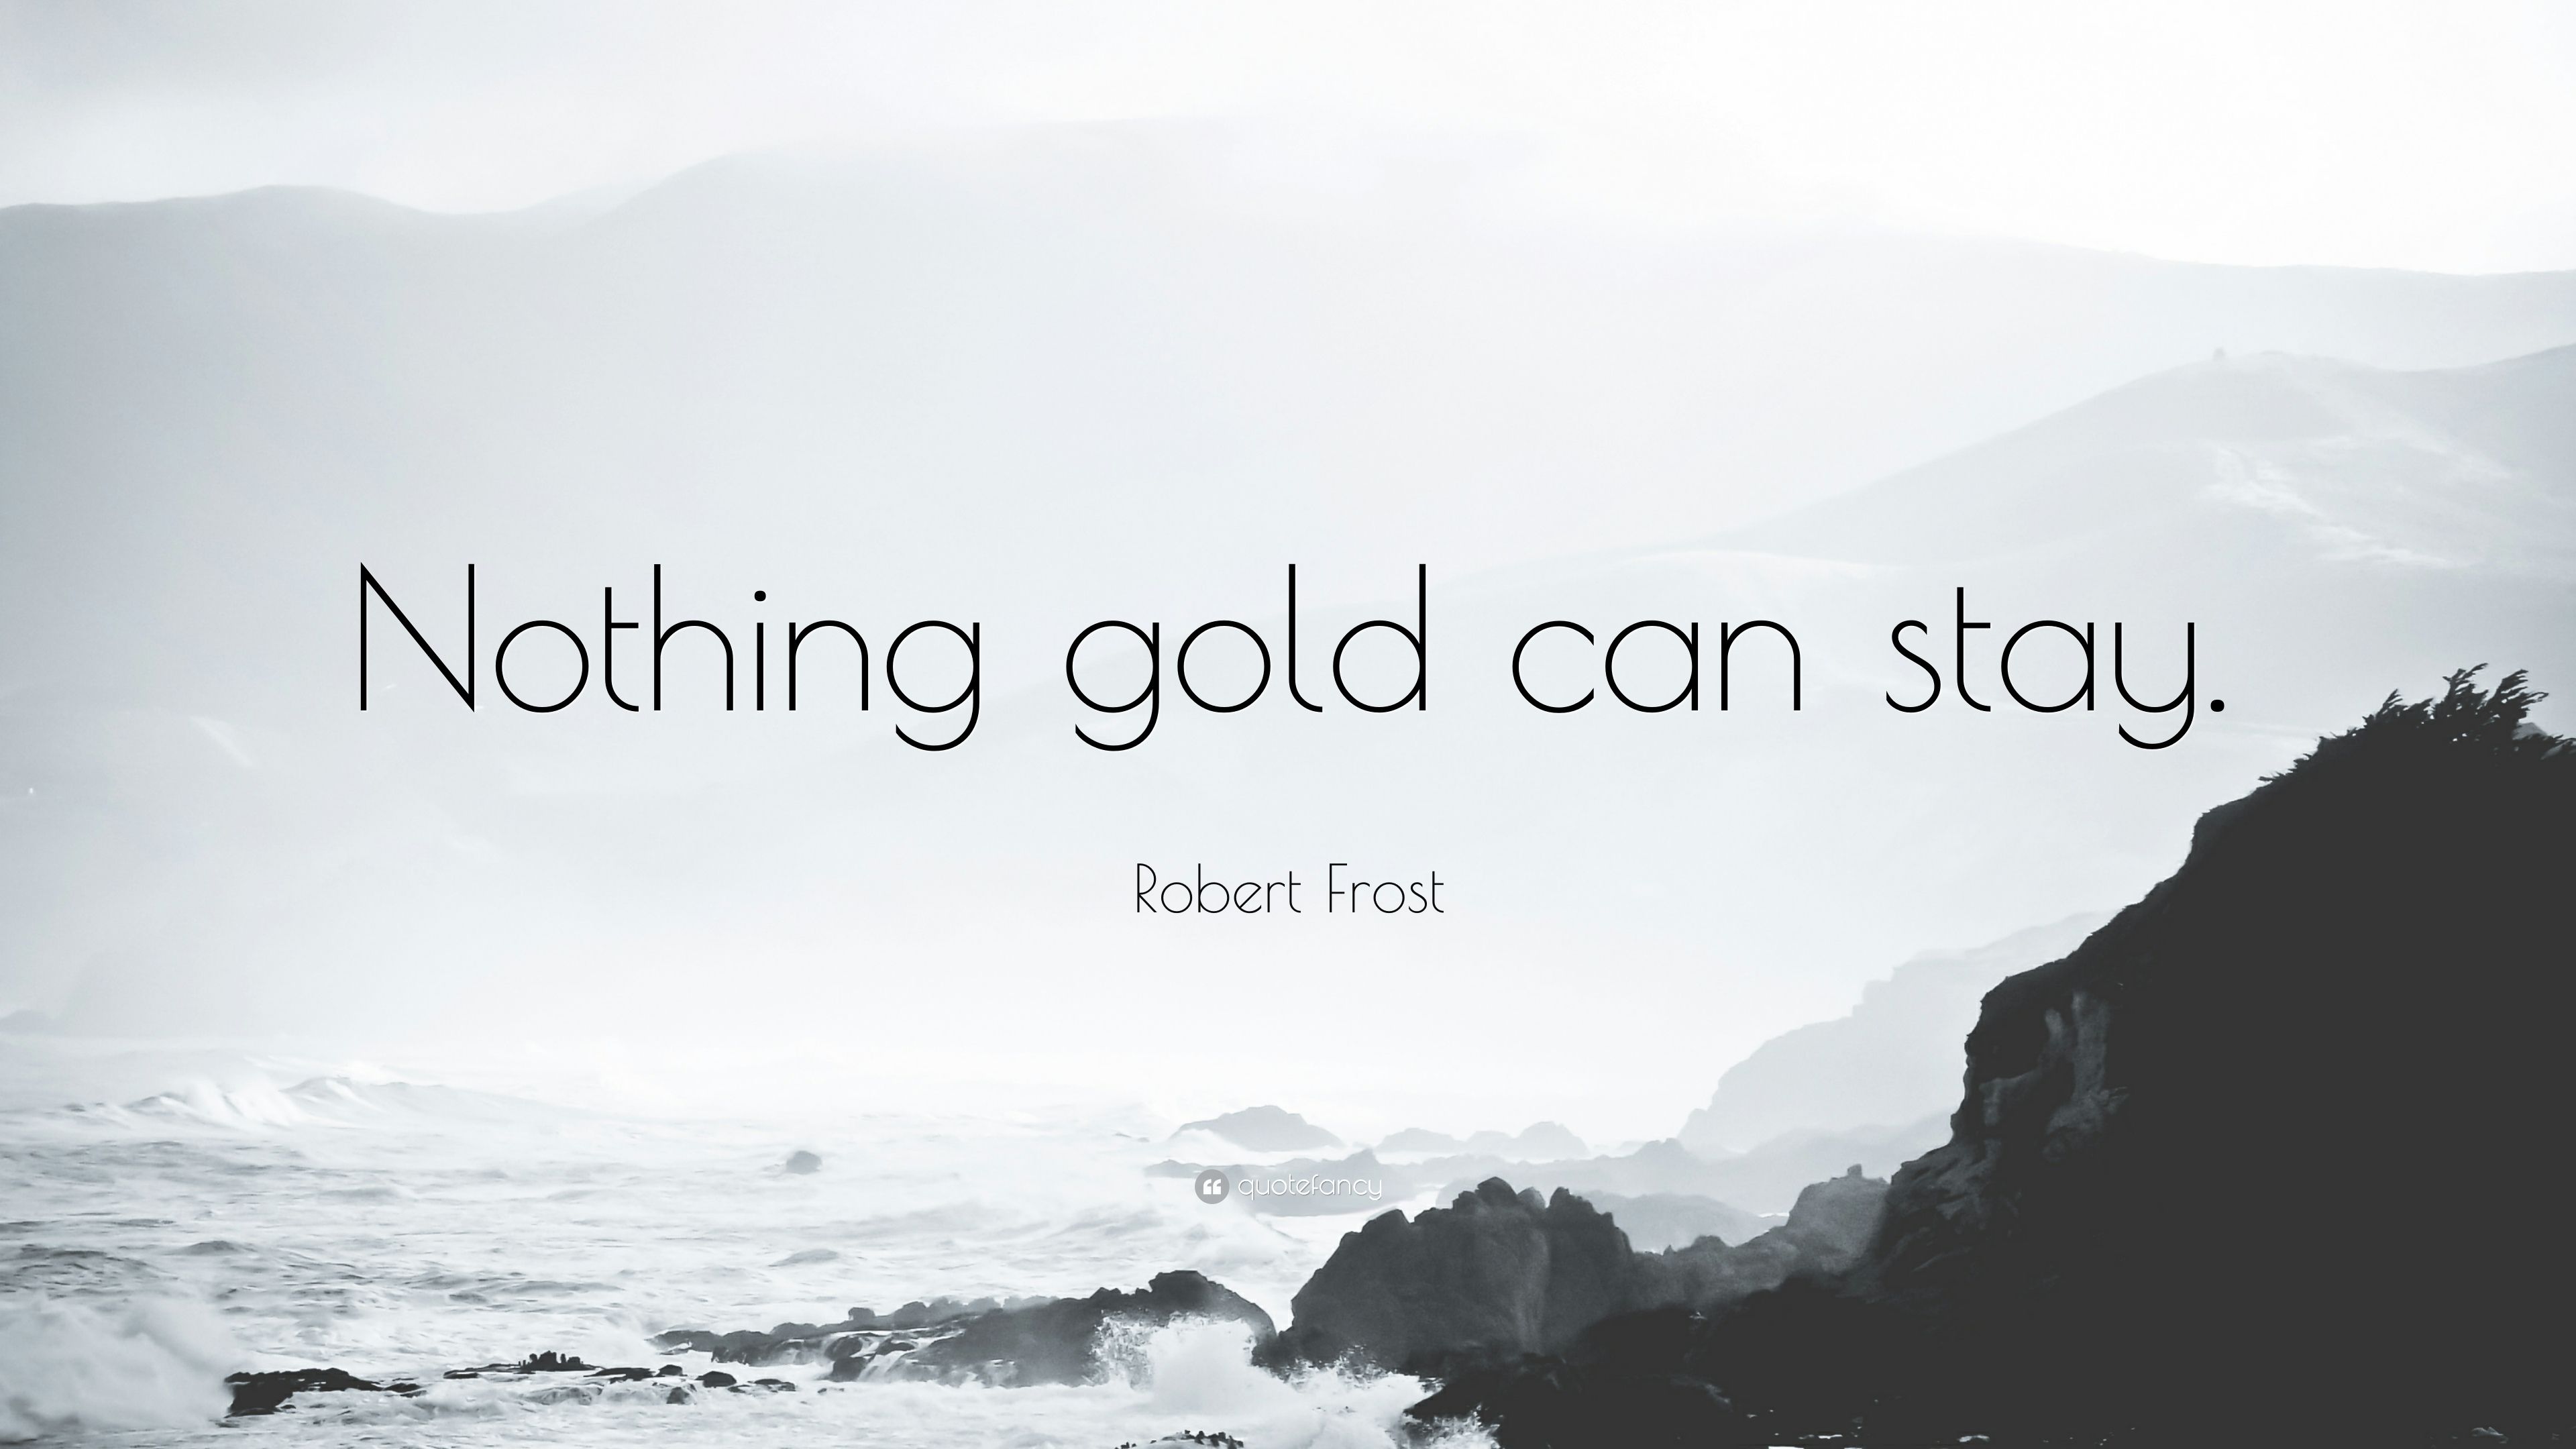 Robert Frost Quotes .quotefancy.com